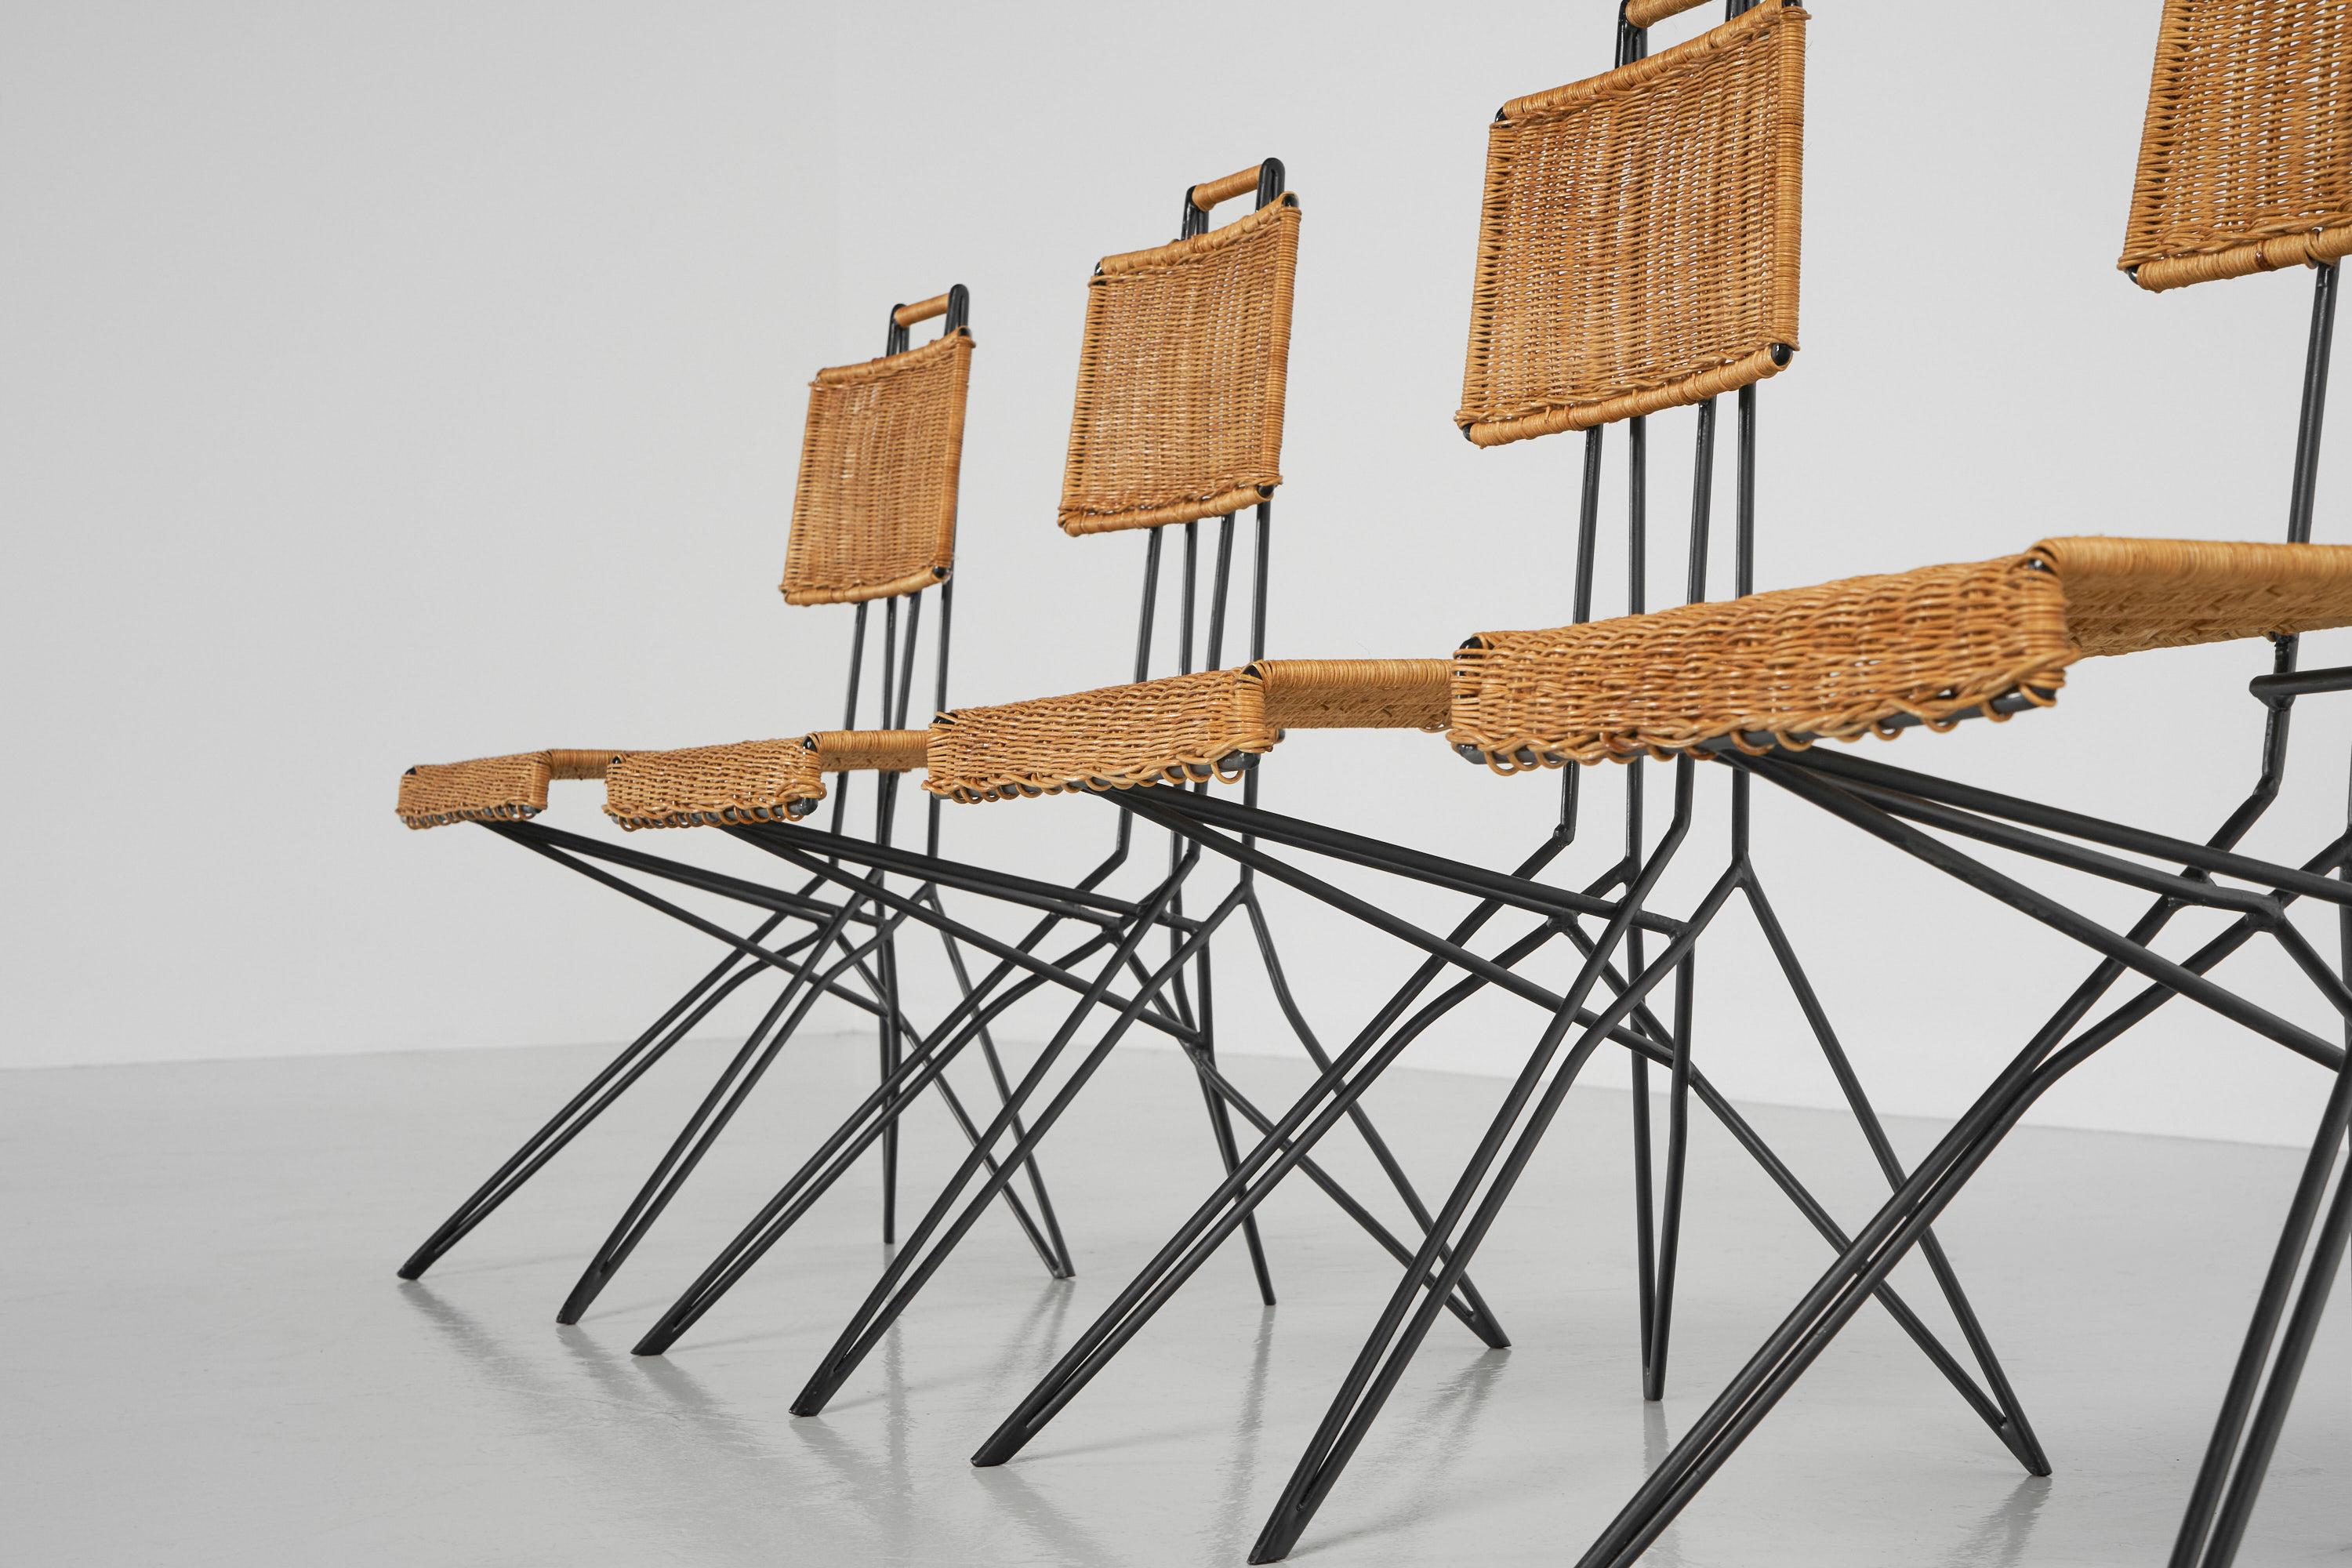 Fantastique ensemble de 6 chaises de salle à manger attribuées à Raoul Guys, fabriquées par Airborne France 1950. Ces chaises étonnantes ont un cadre en acier solide qui est peint en noir. Les cadres ont une forme unique et caractéristique. Les